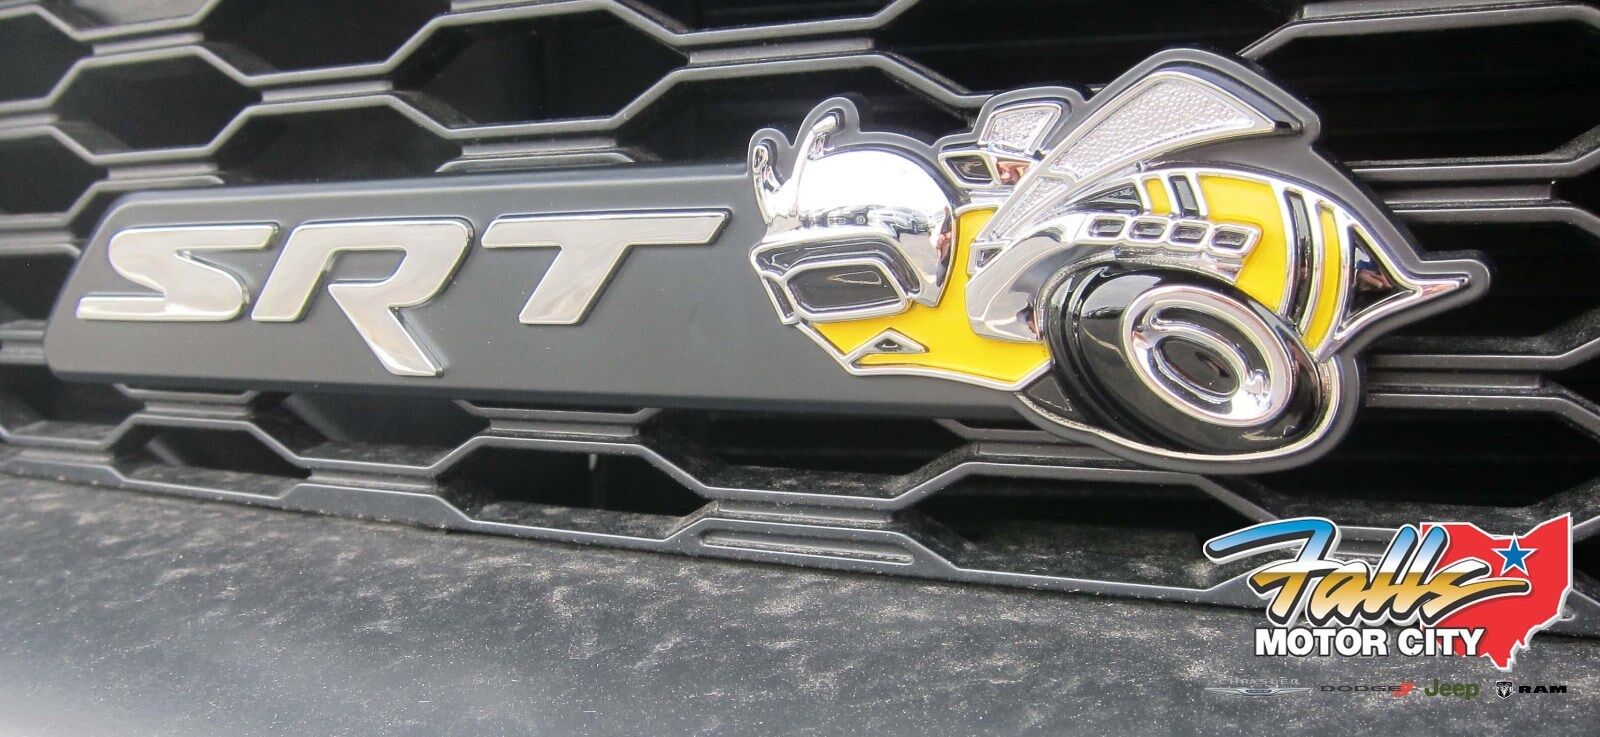 2012-2014 Dodge Charger SRT Super Bee SuperBee Clip On Grille Badge Emblem Mopar